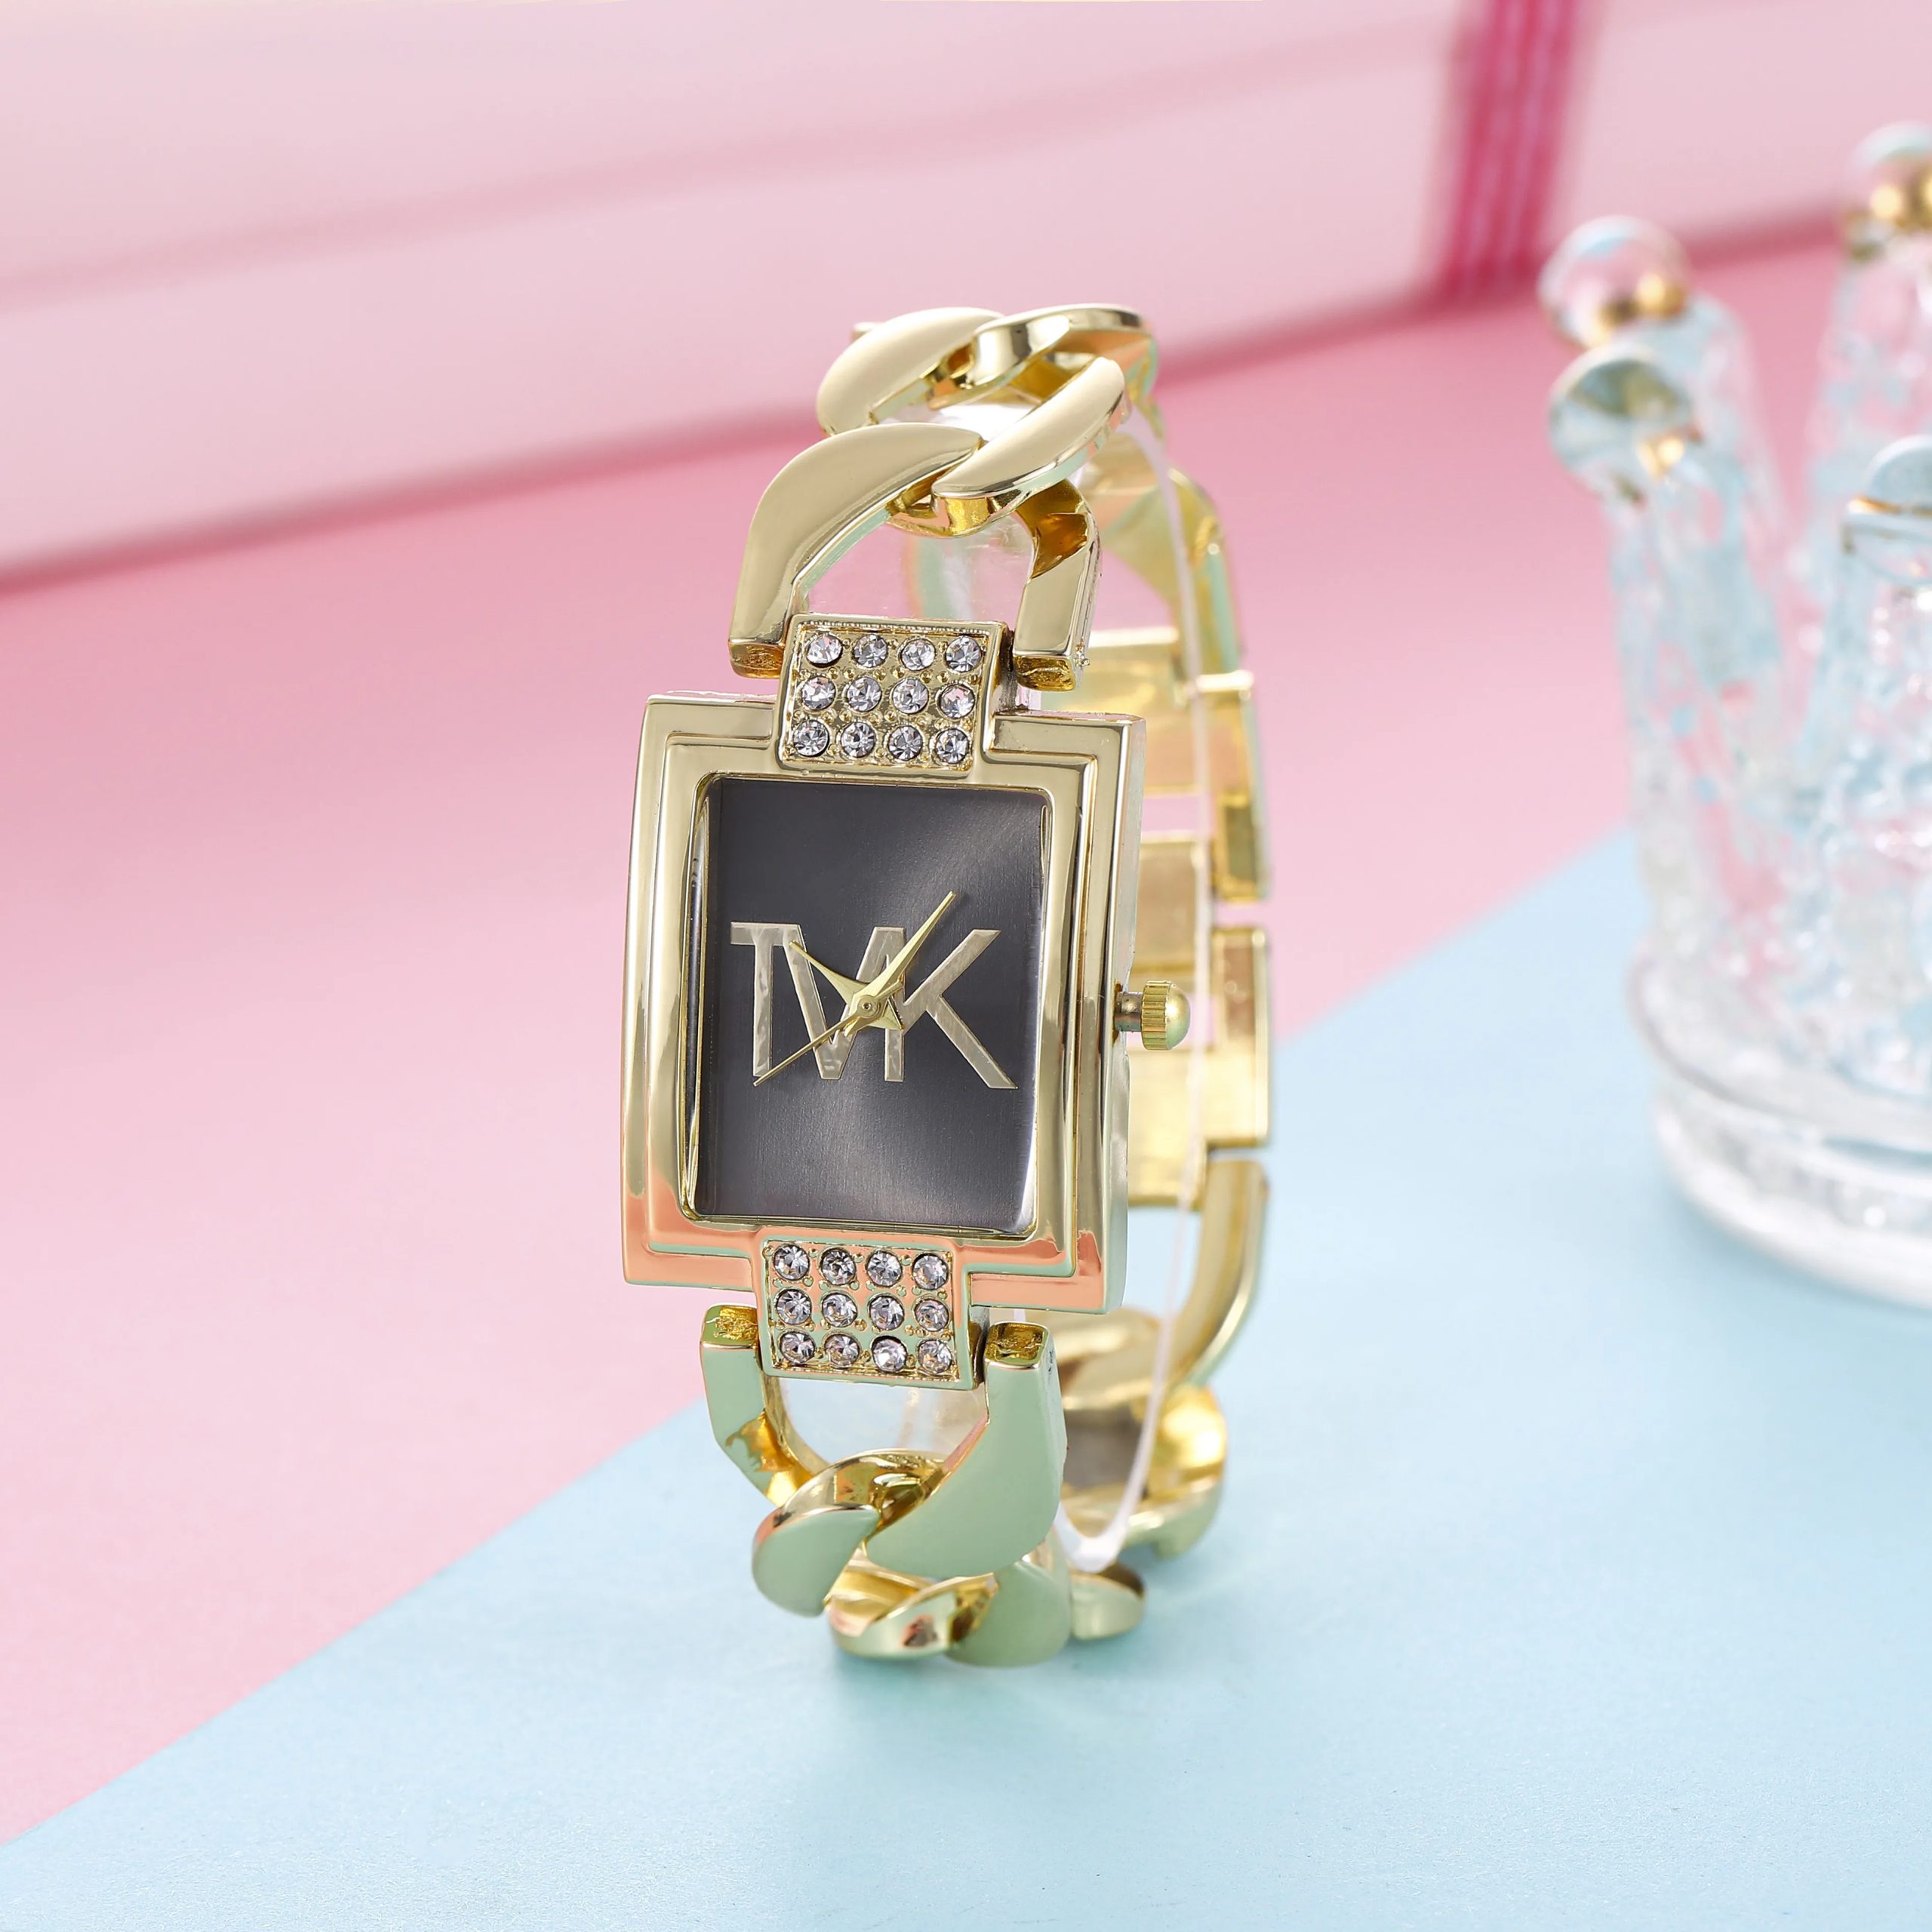 Luxury TVK Brand New Women's Watch Fashionable Quartz Women's Watch